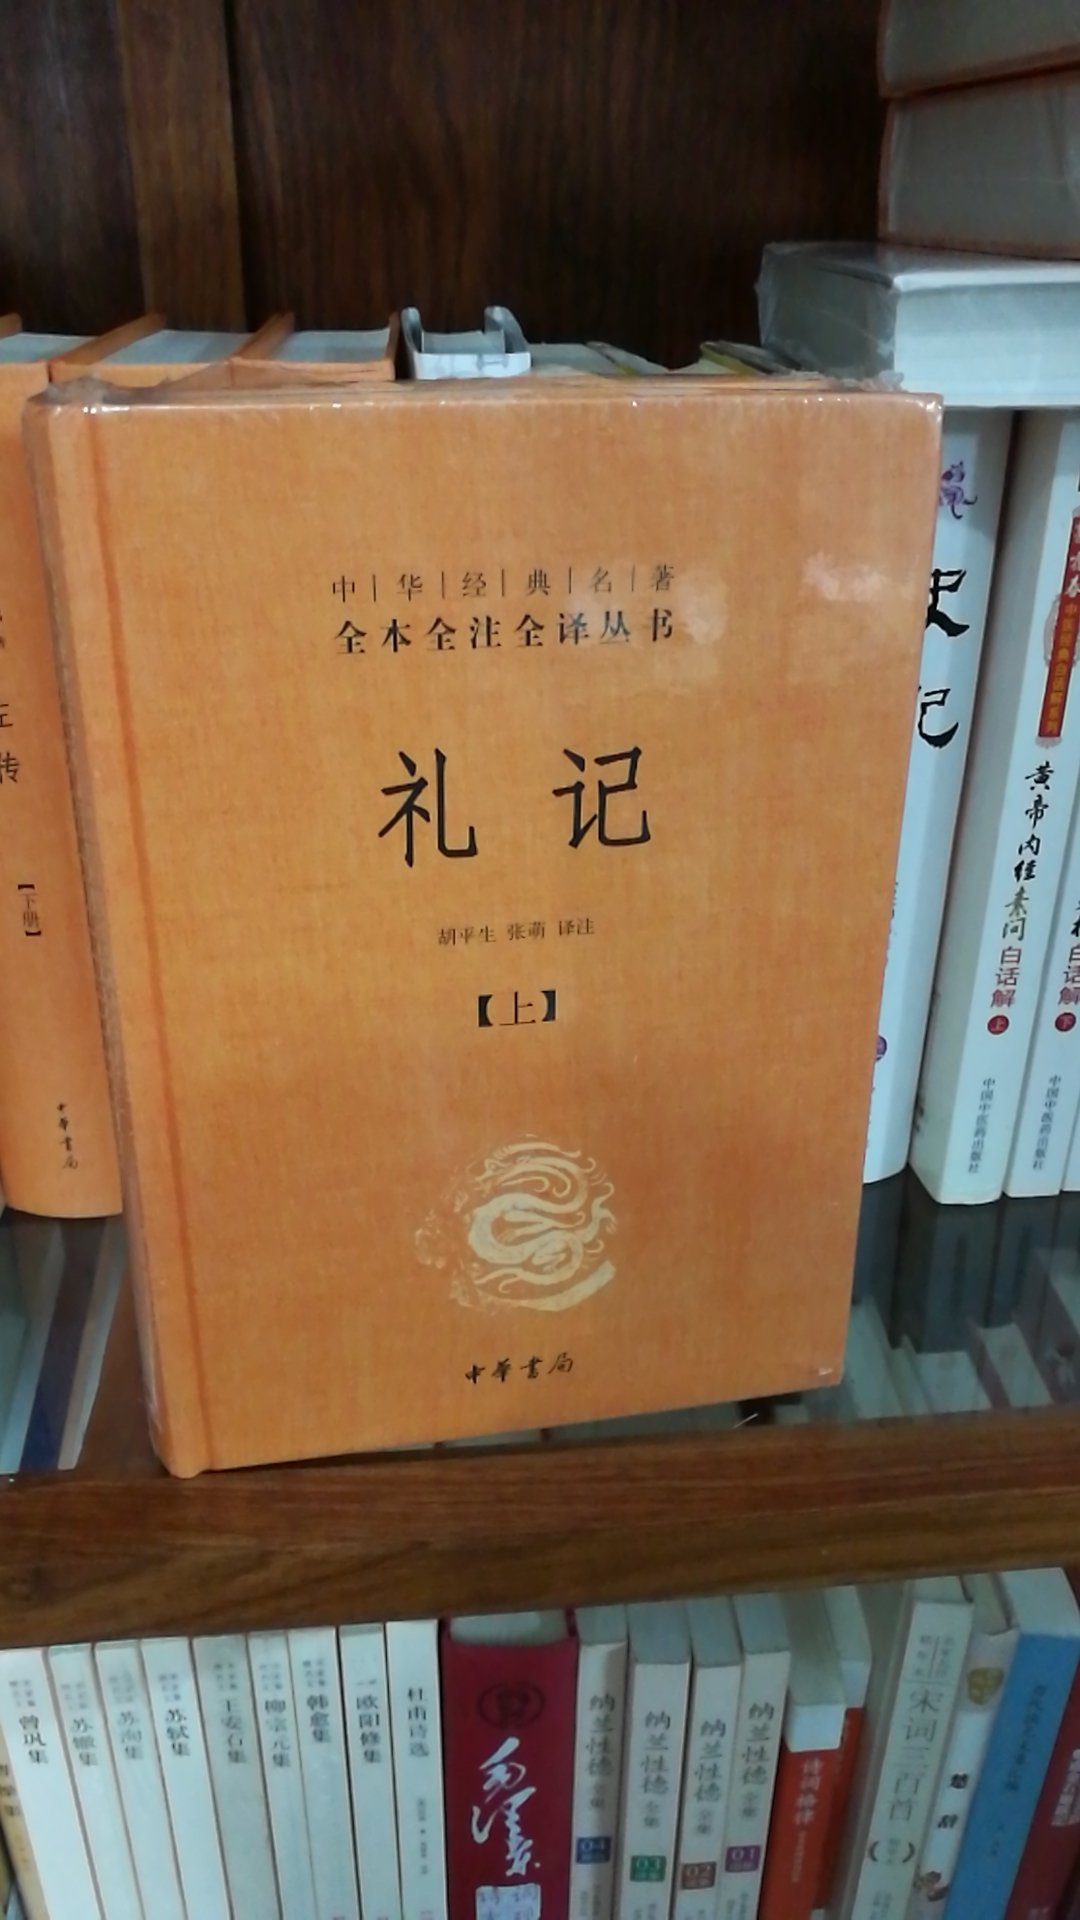 中华书局的书质量一如既往的好评，